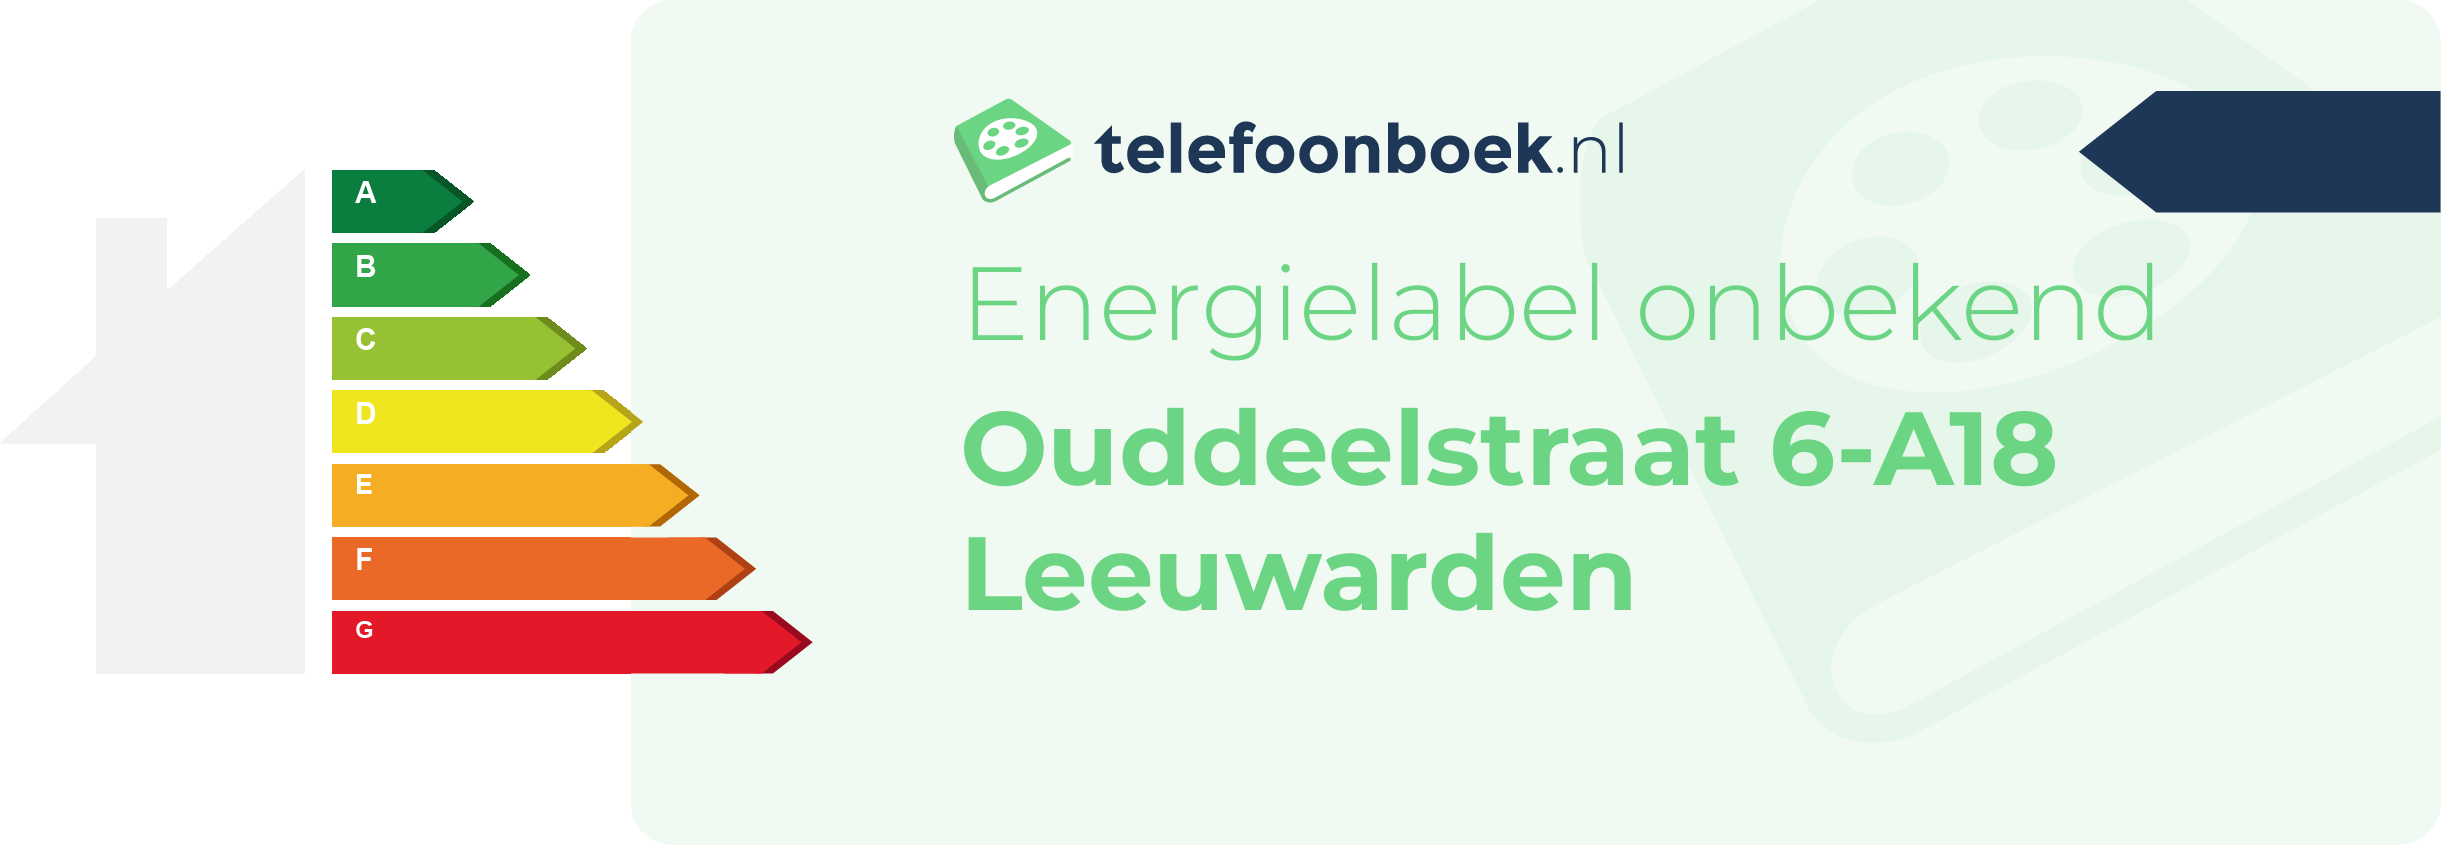 Energielabel Ouddeelstraat 6-A18 Leeuwarden